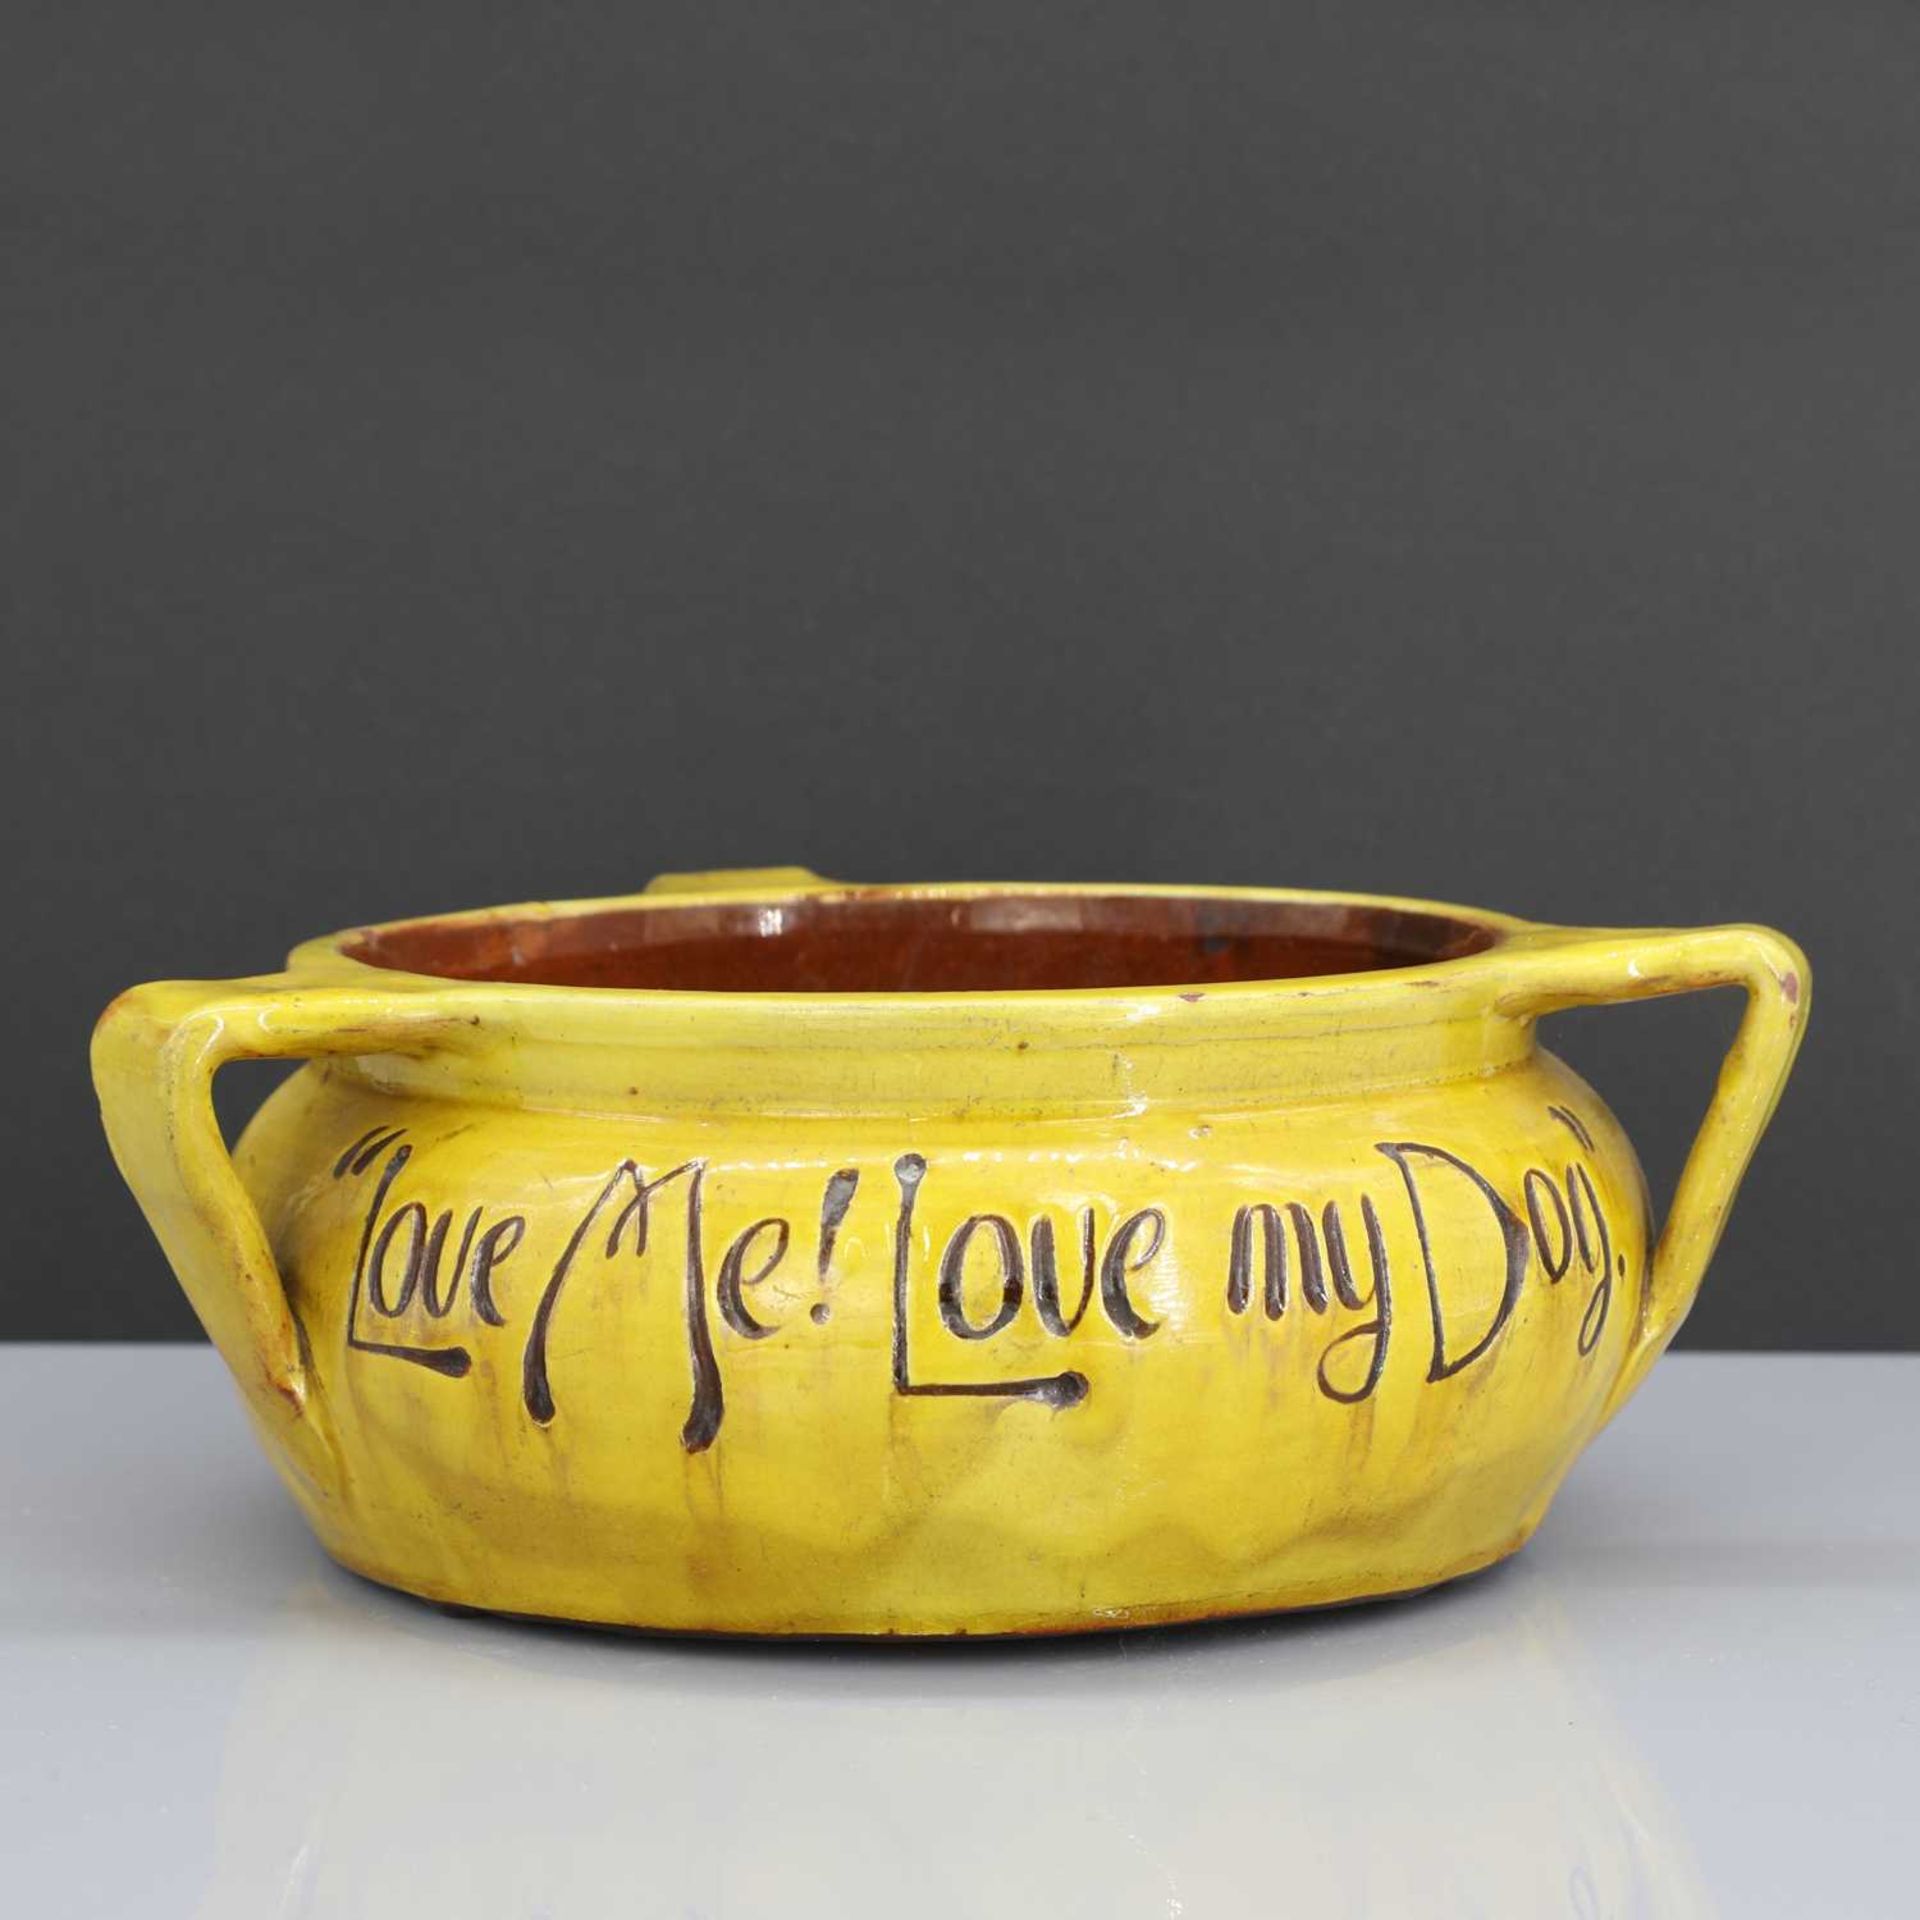 A rare Liberty & Co. yellow pottery dog bowl,